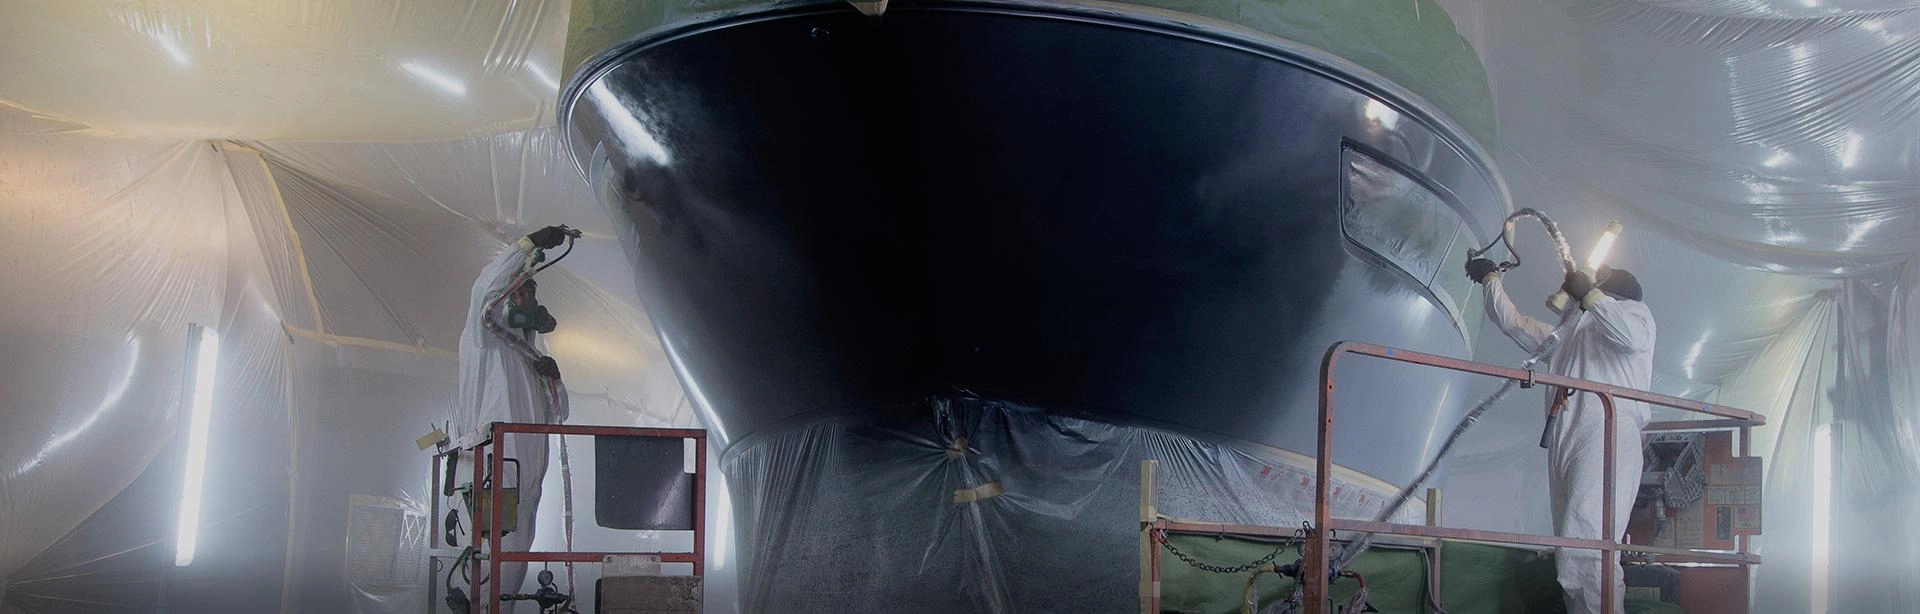 Specjalista malujący łódź na czarny kolor